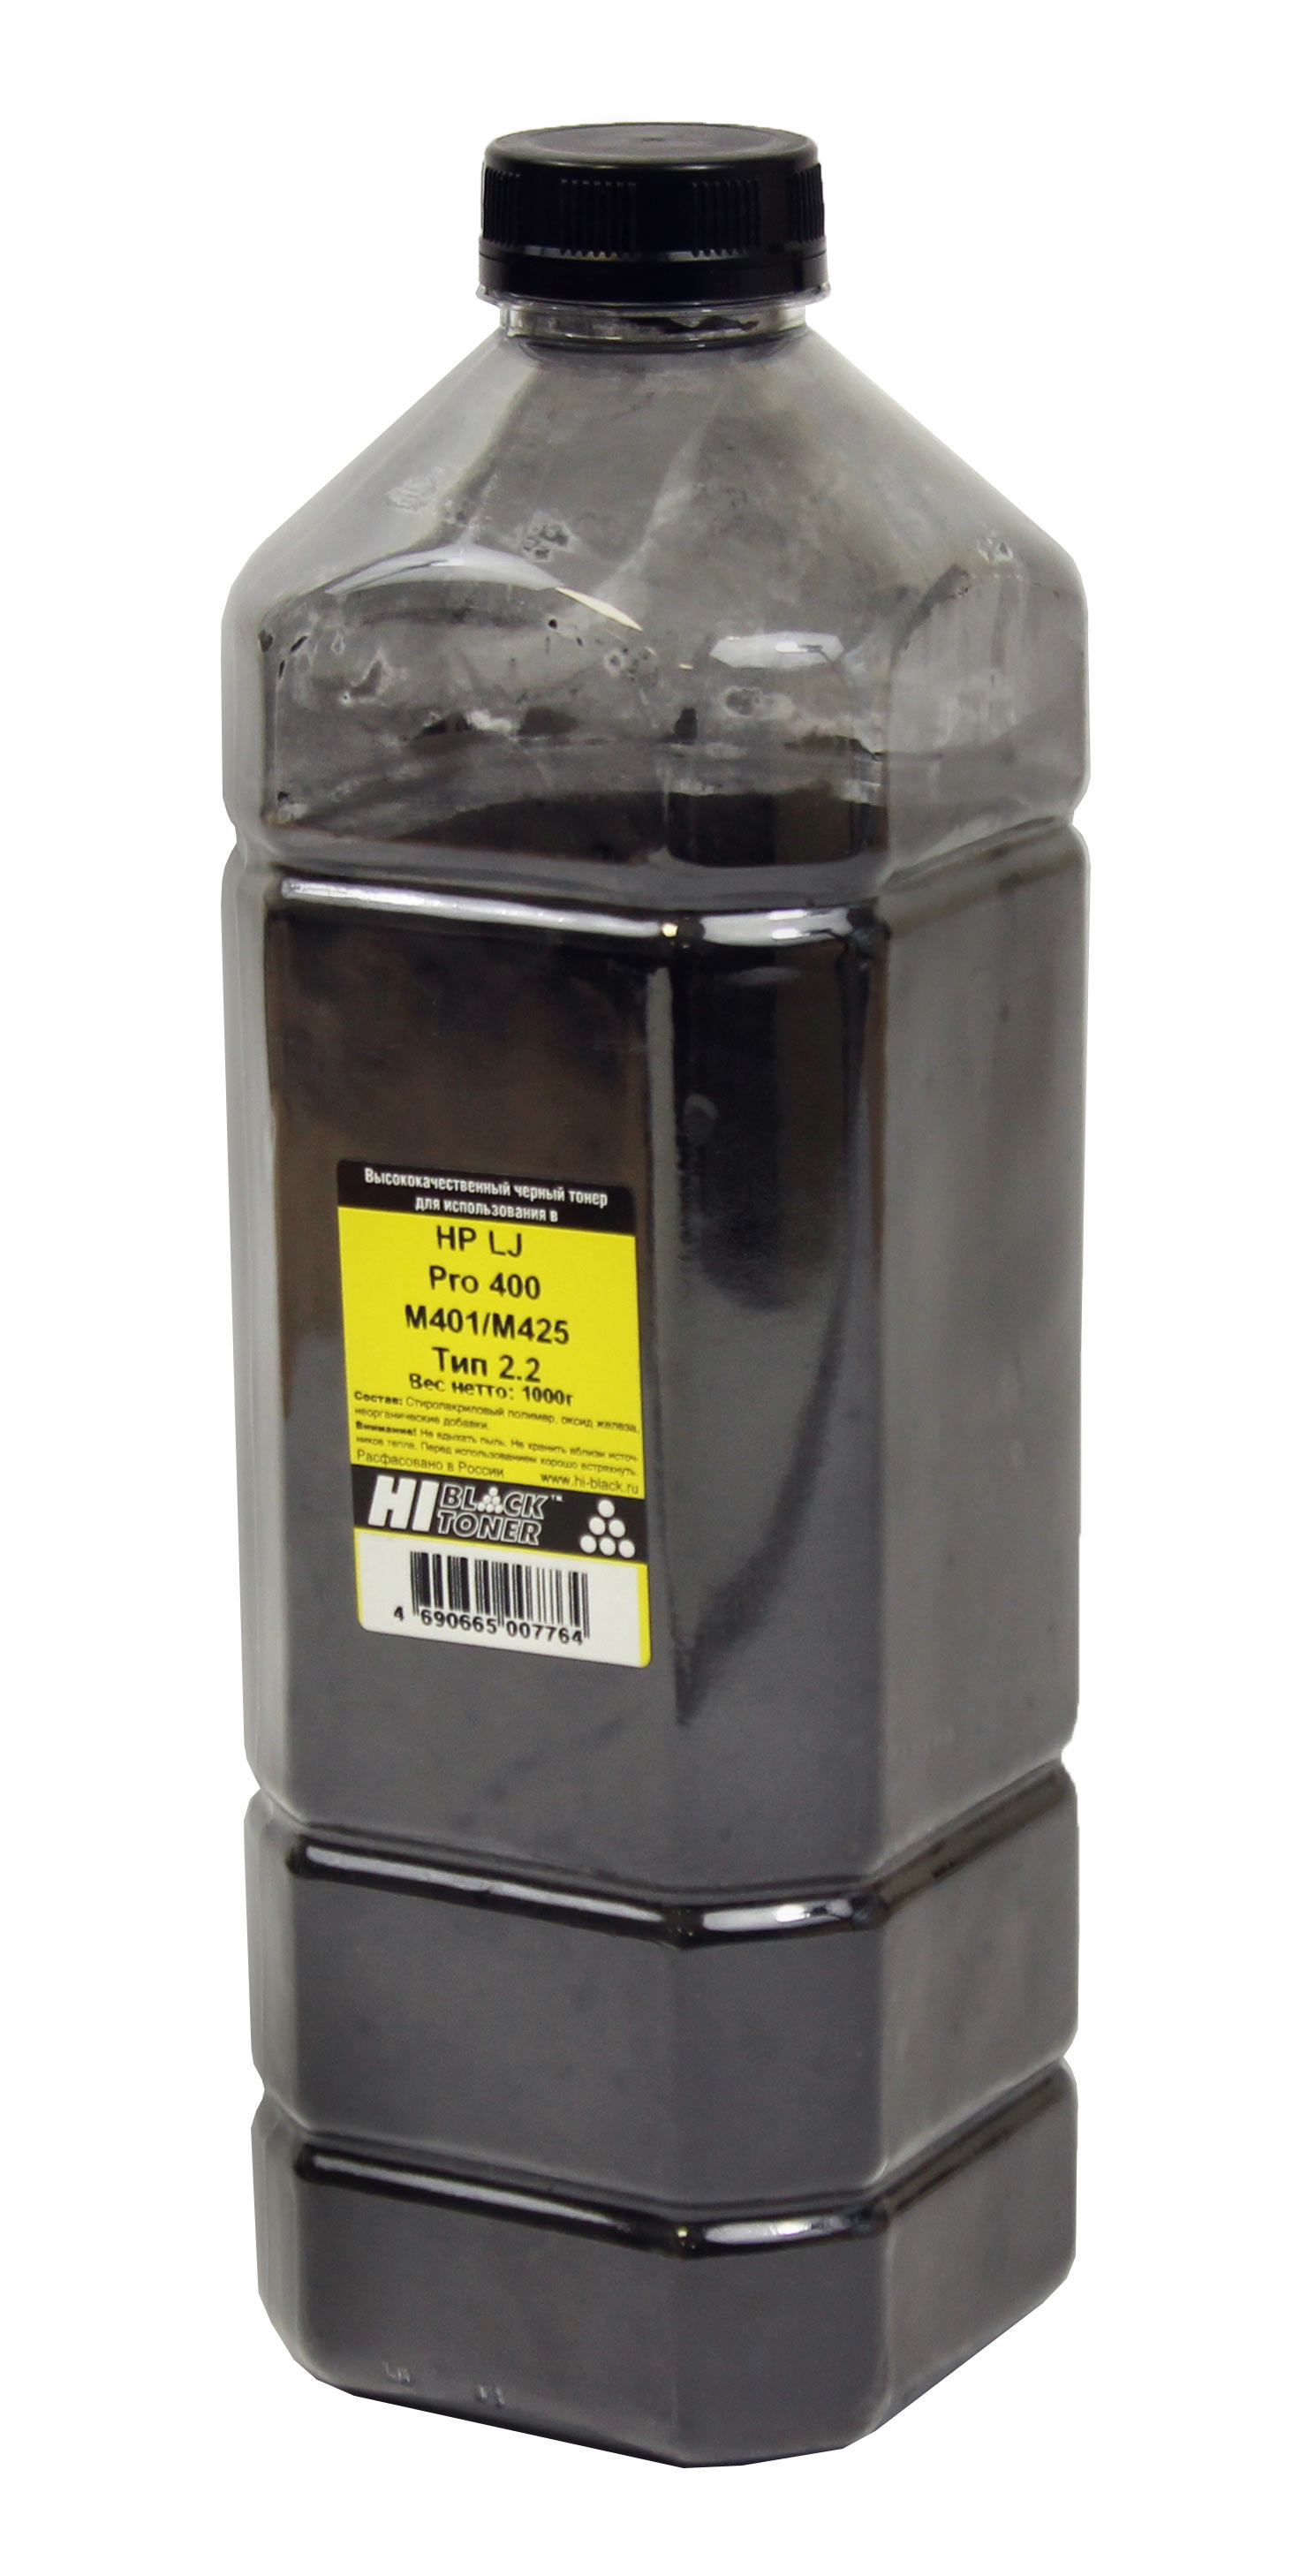 Тонер Hi-Black для HP LJ Pro 400 M401/M425, Тип 2.2, Bk, 1 кг, канистра